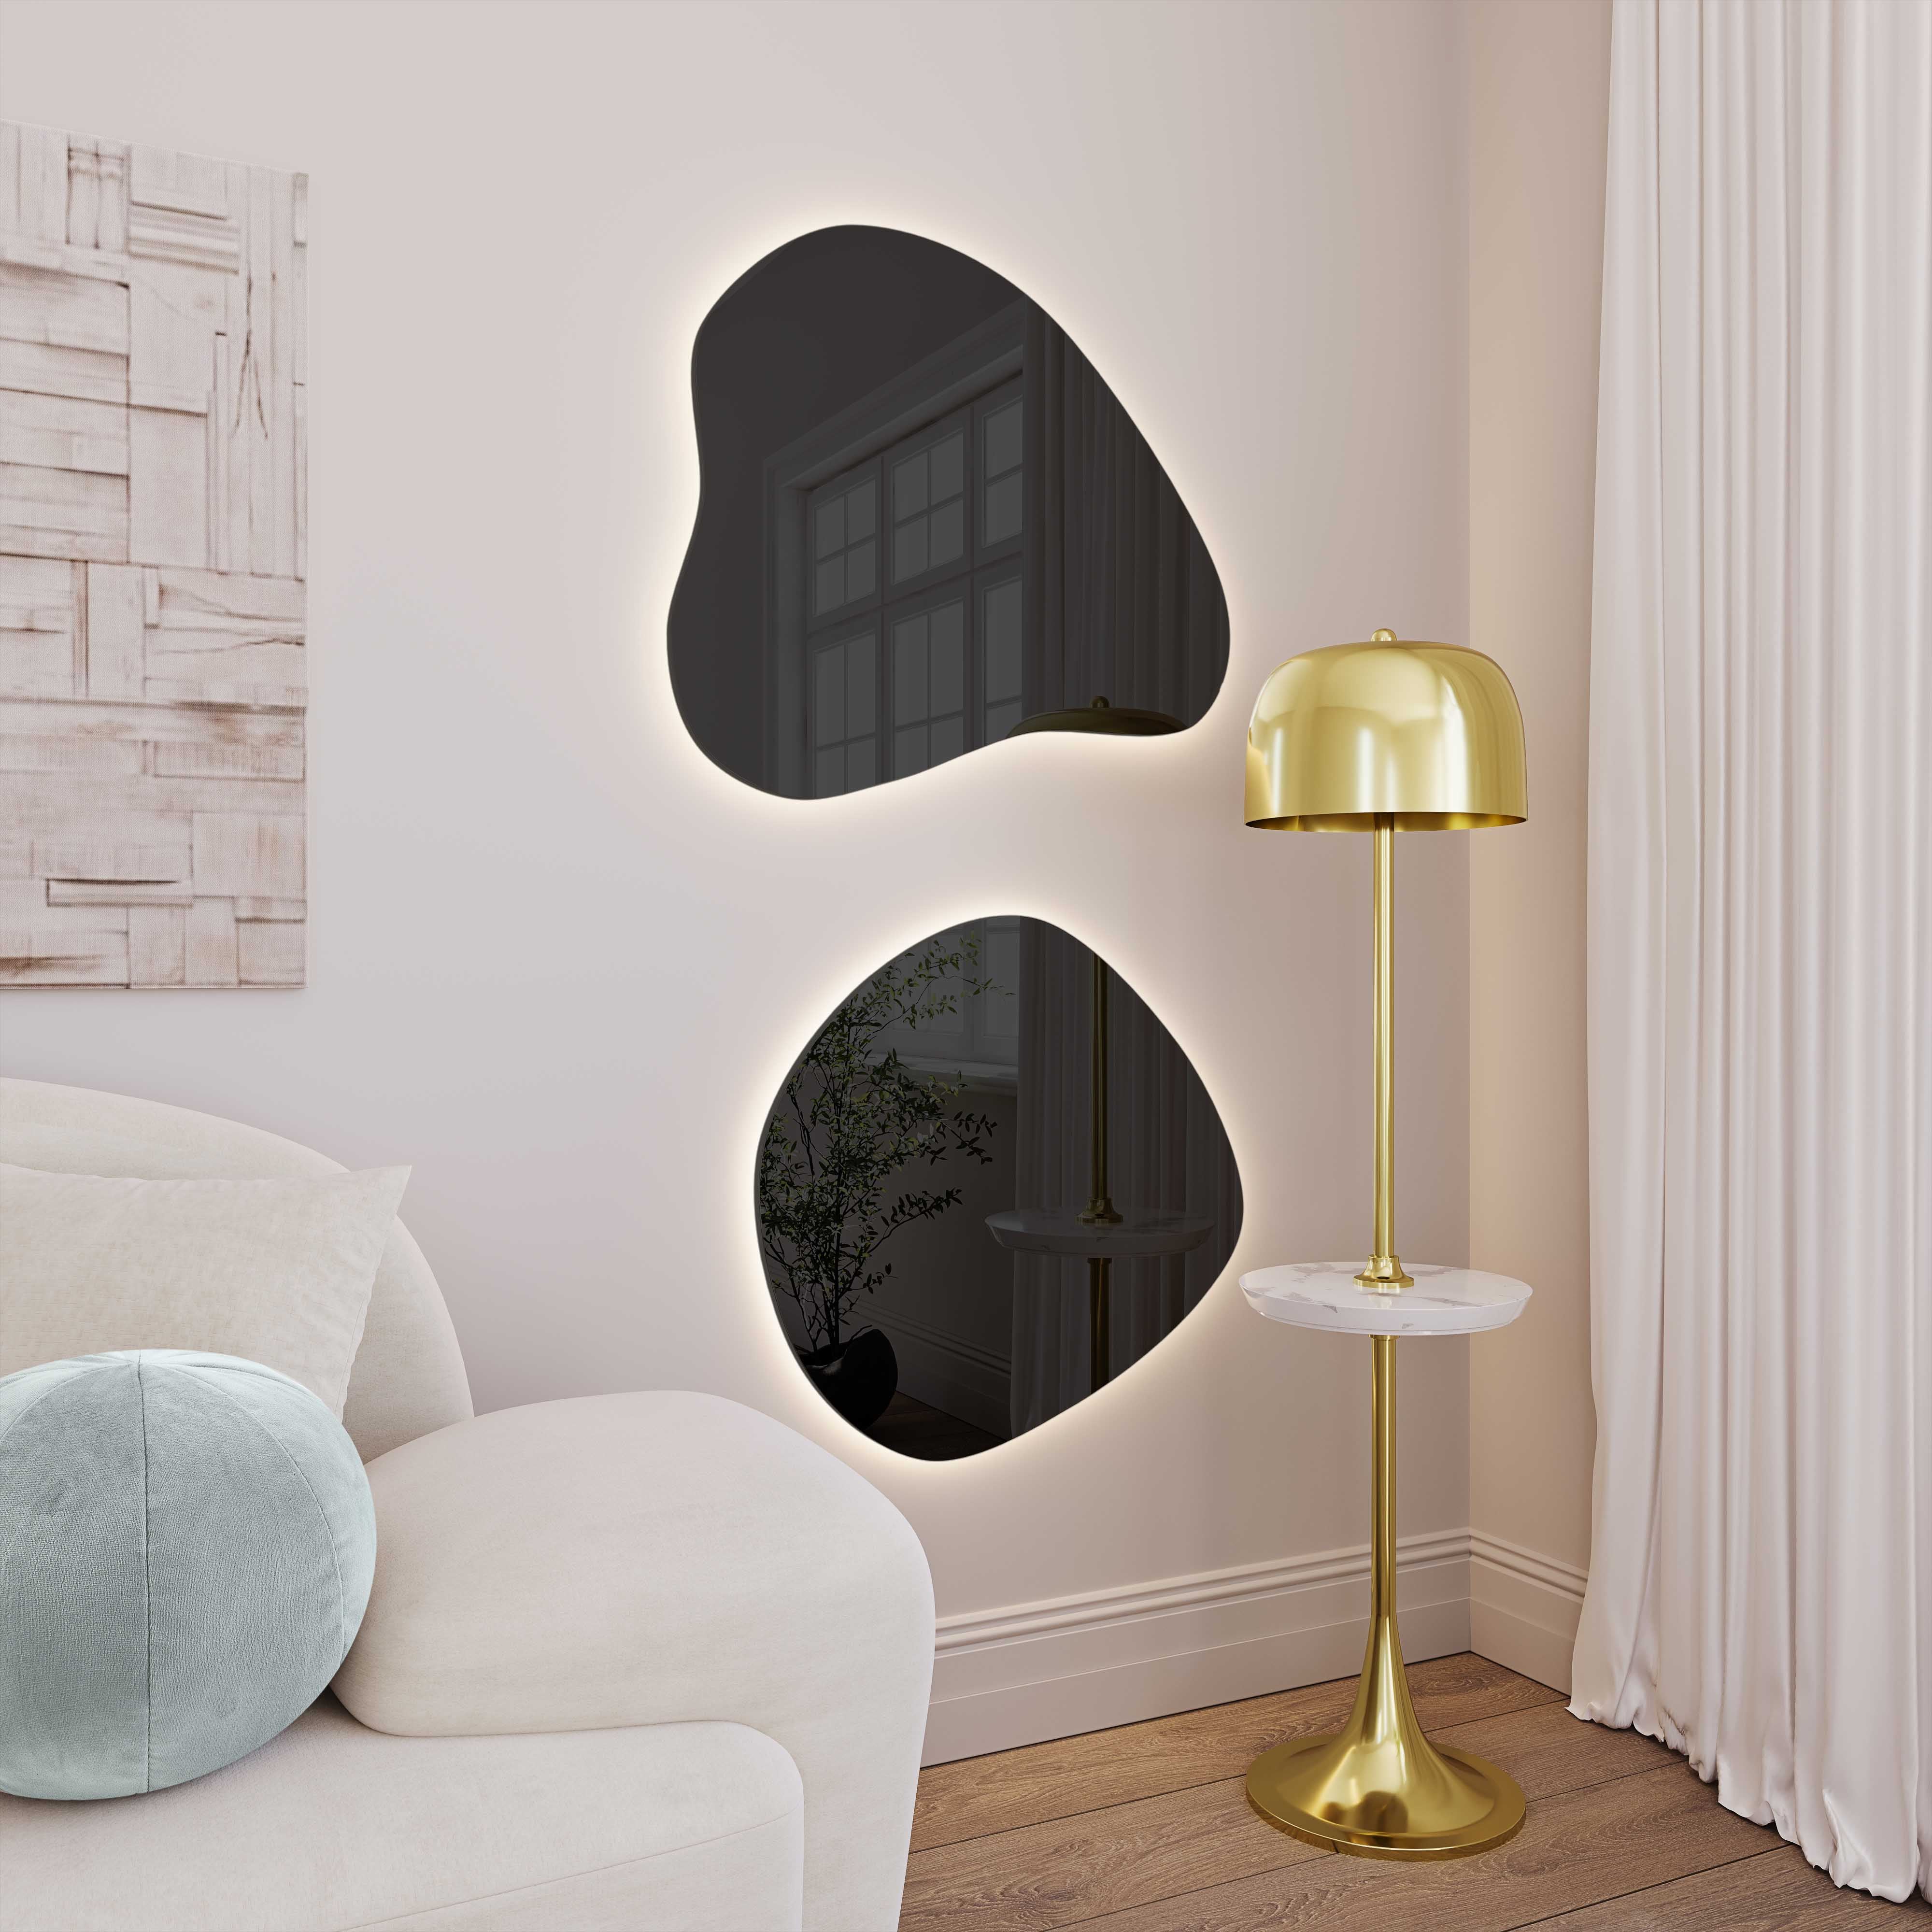 Espejo de pared LED entintado en forma de lágrima Mónica y EPMM-02 con forma ovalada irregular.